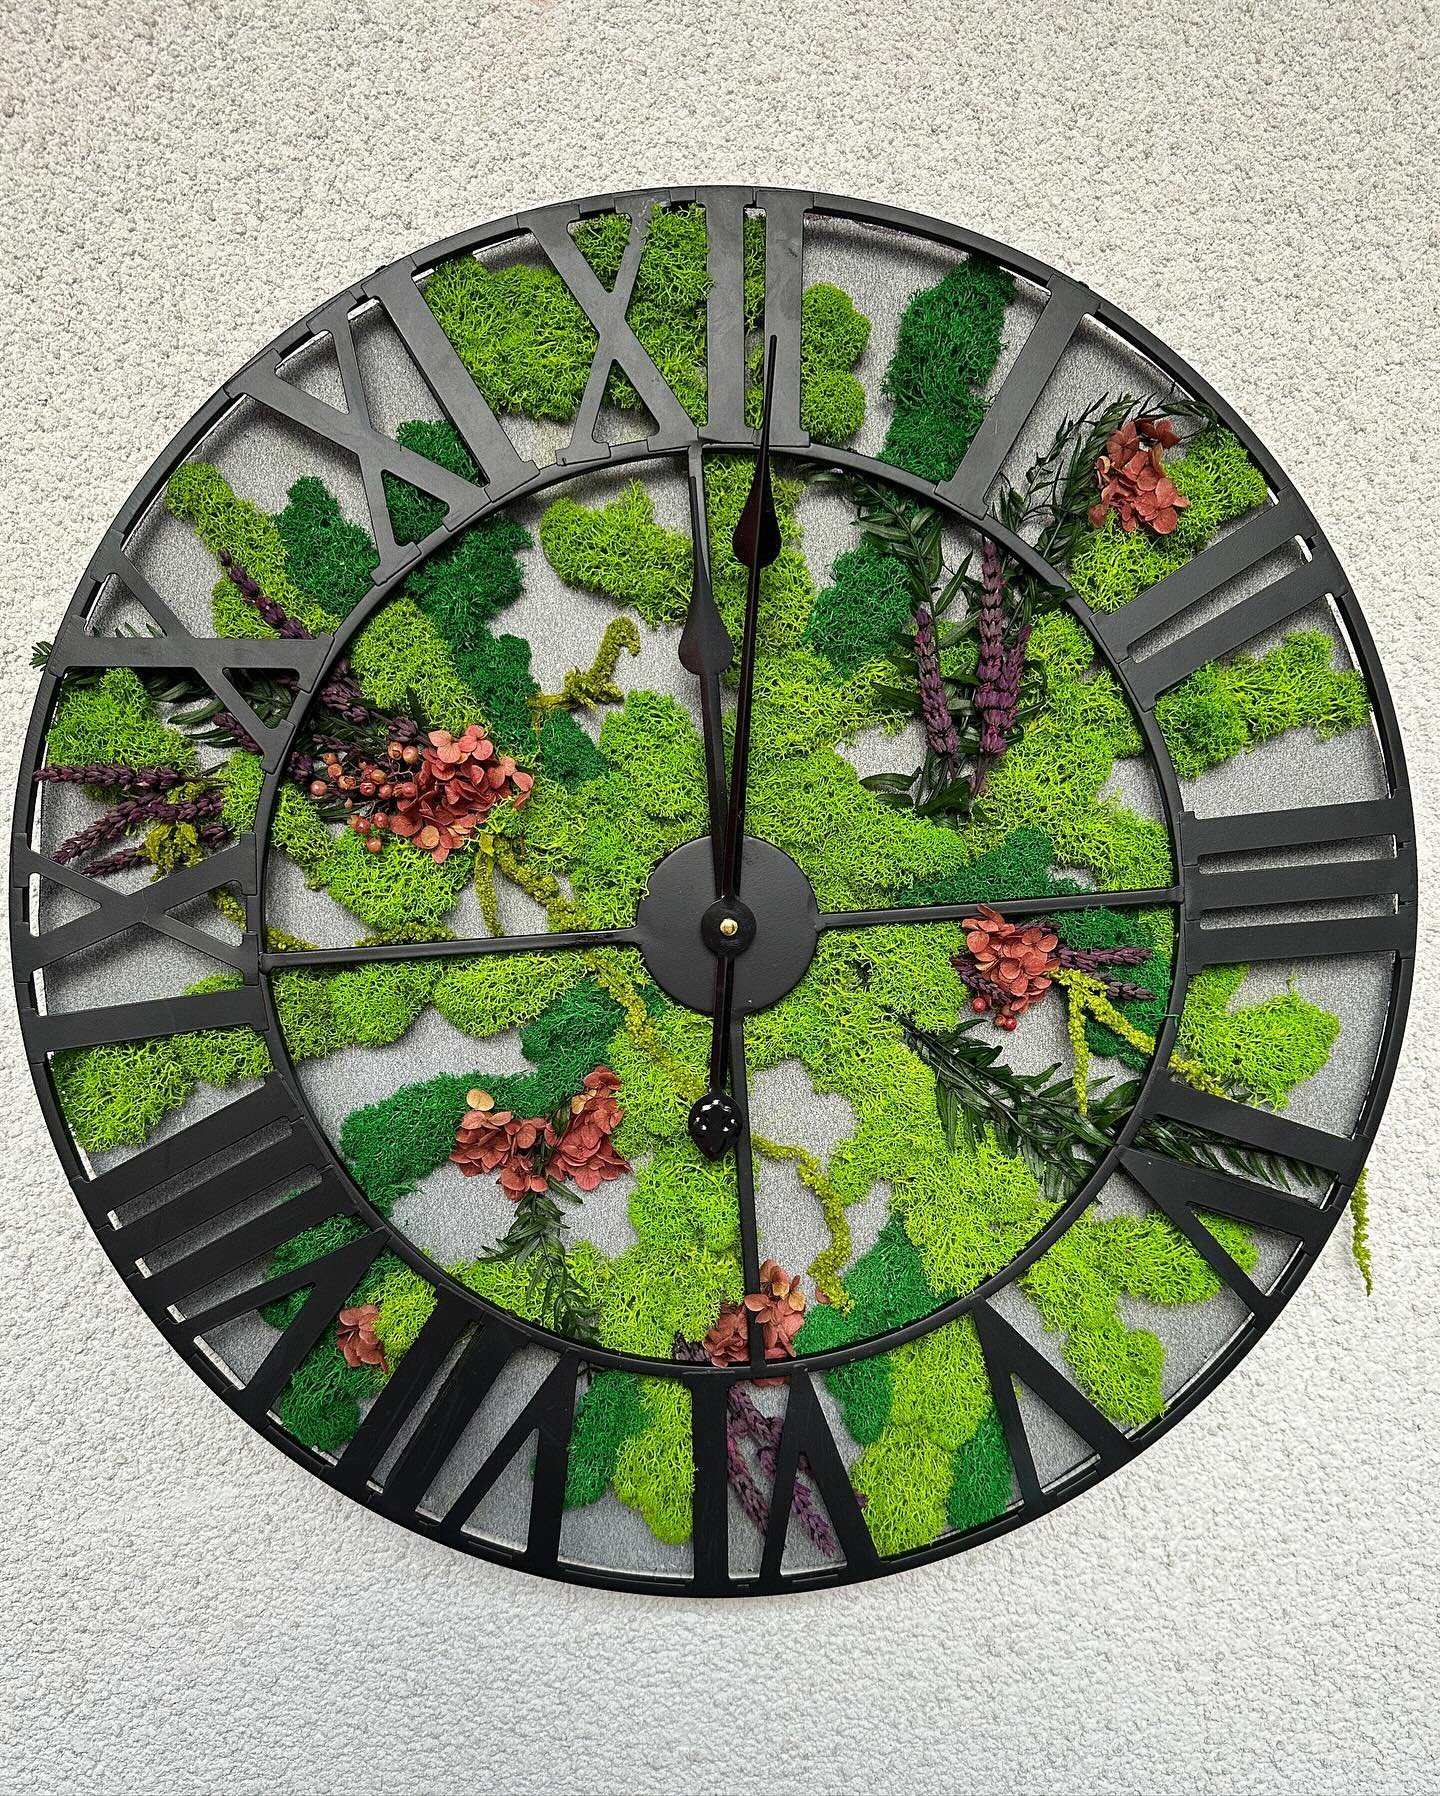 Hai gi&agrave; scelto il tuo orologio? 

Parola d&rsquo;ordine: UNICIT&Agrave; 

Orologi artigianali, decorati con muschi e fiori stabilizzati. 
Un gioiello appeso alla tua parete 💚